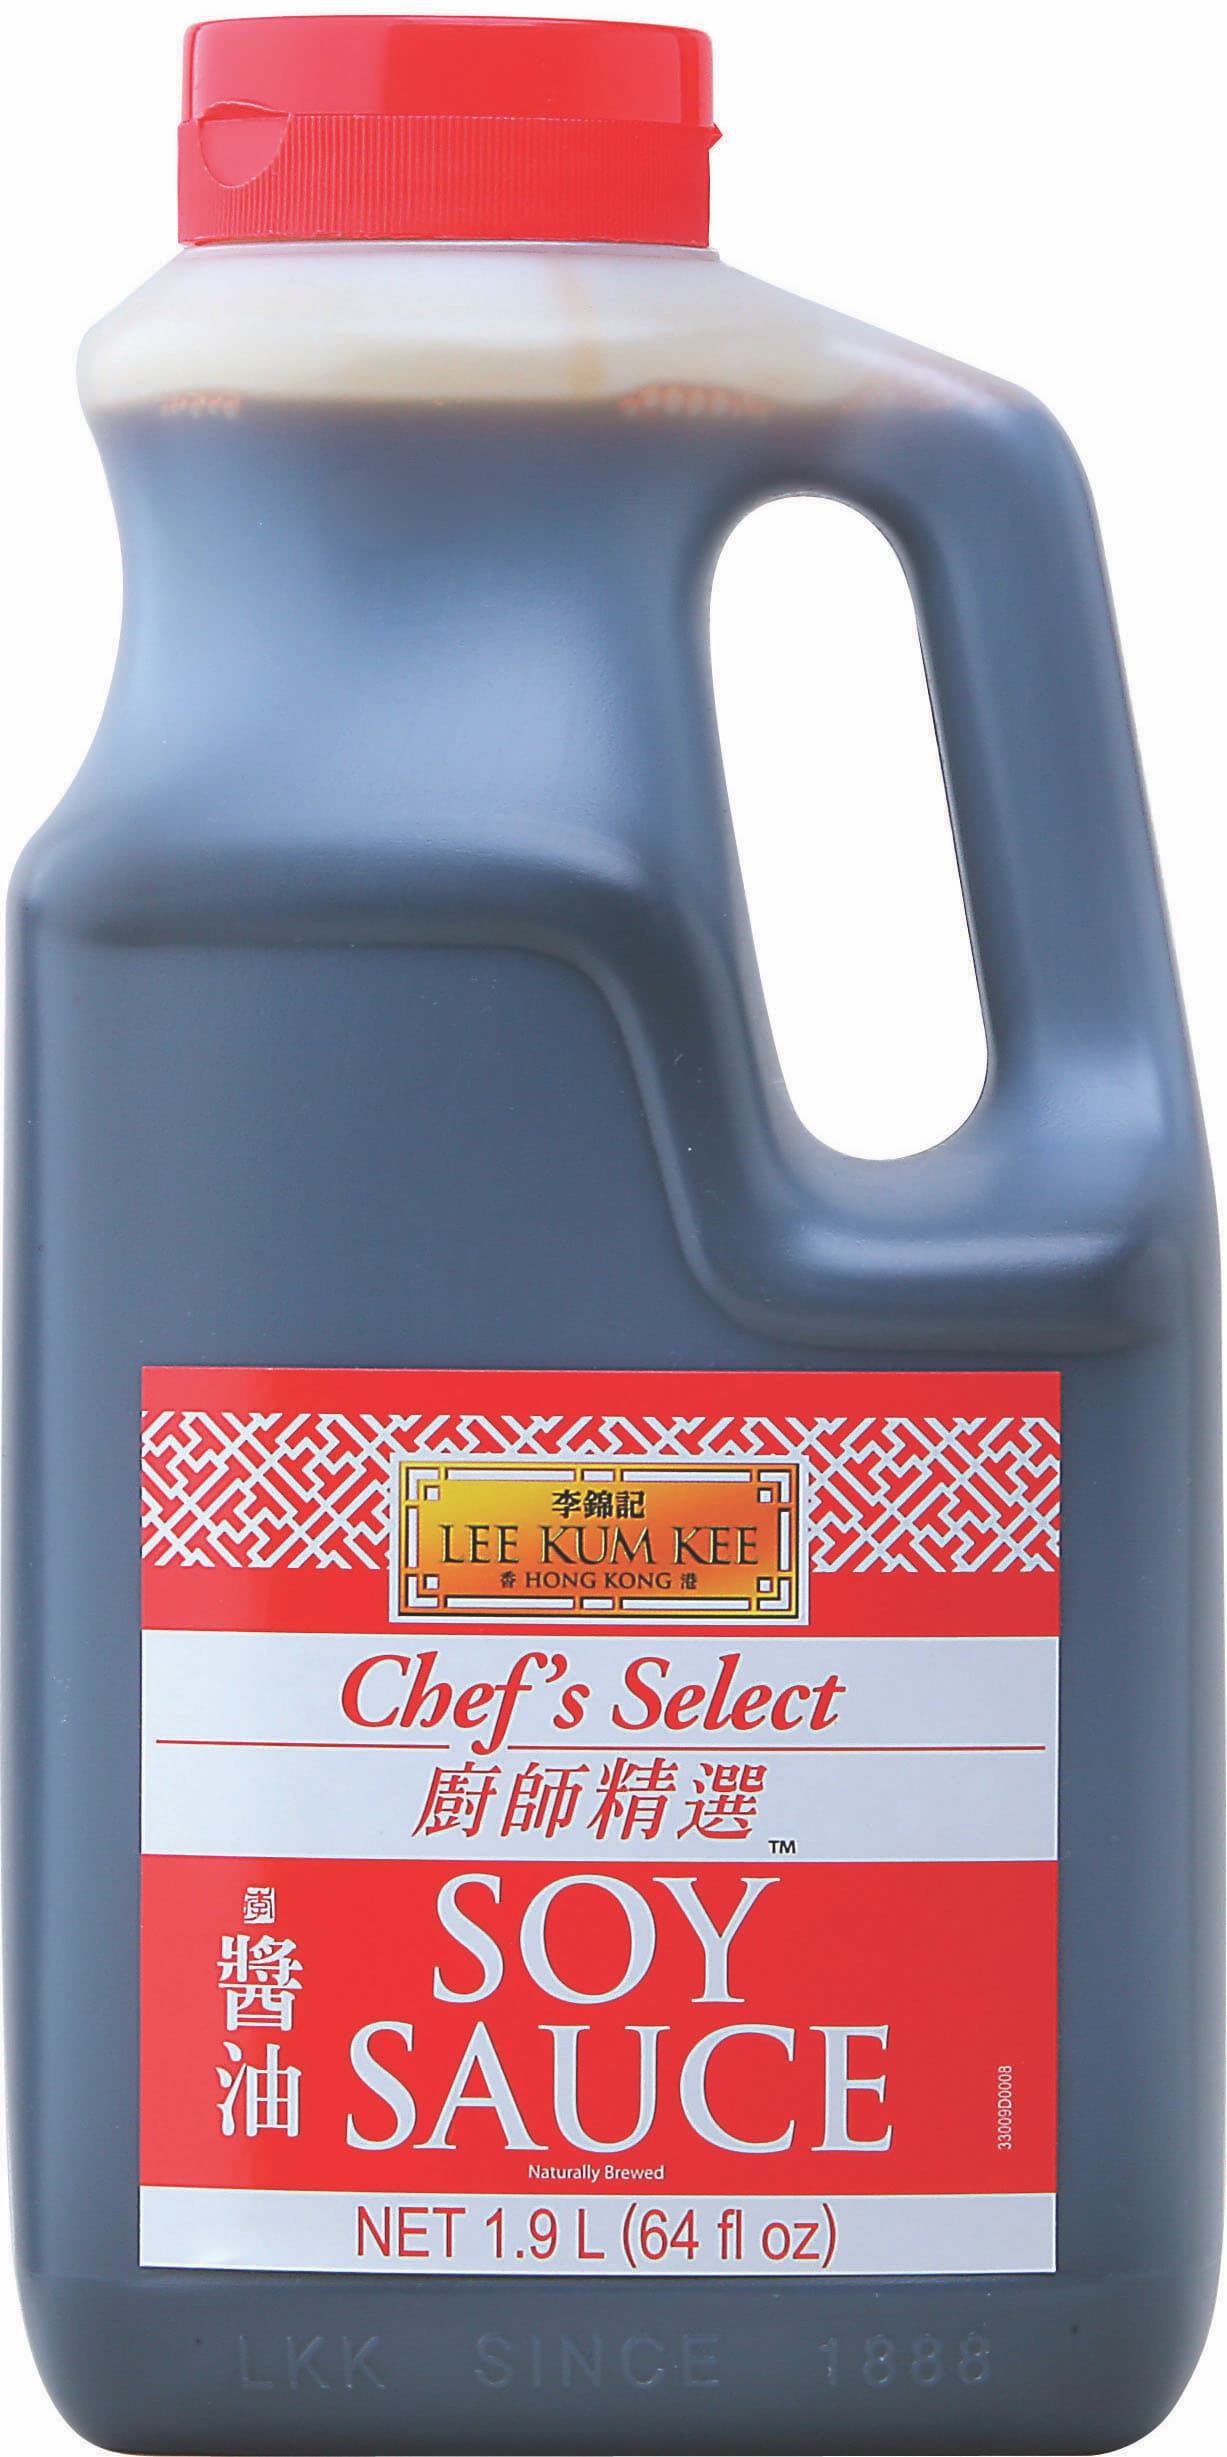 廚師精選醬油 64 oz (1.9L)